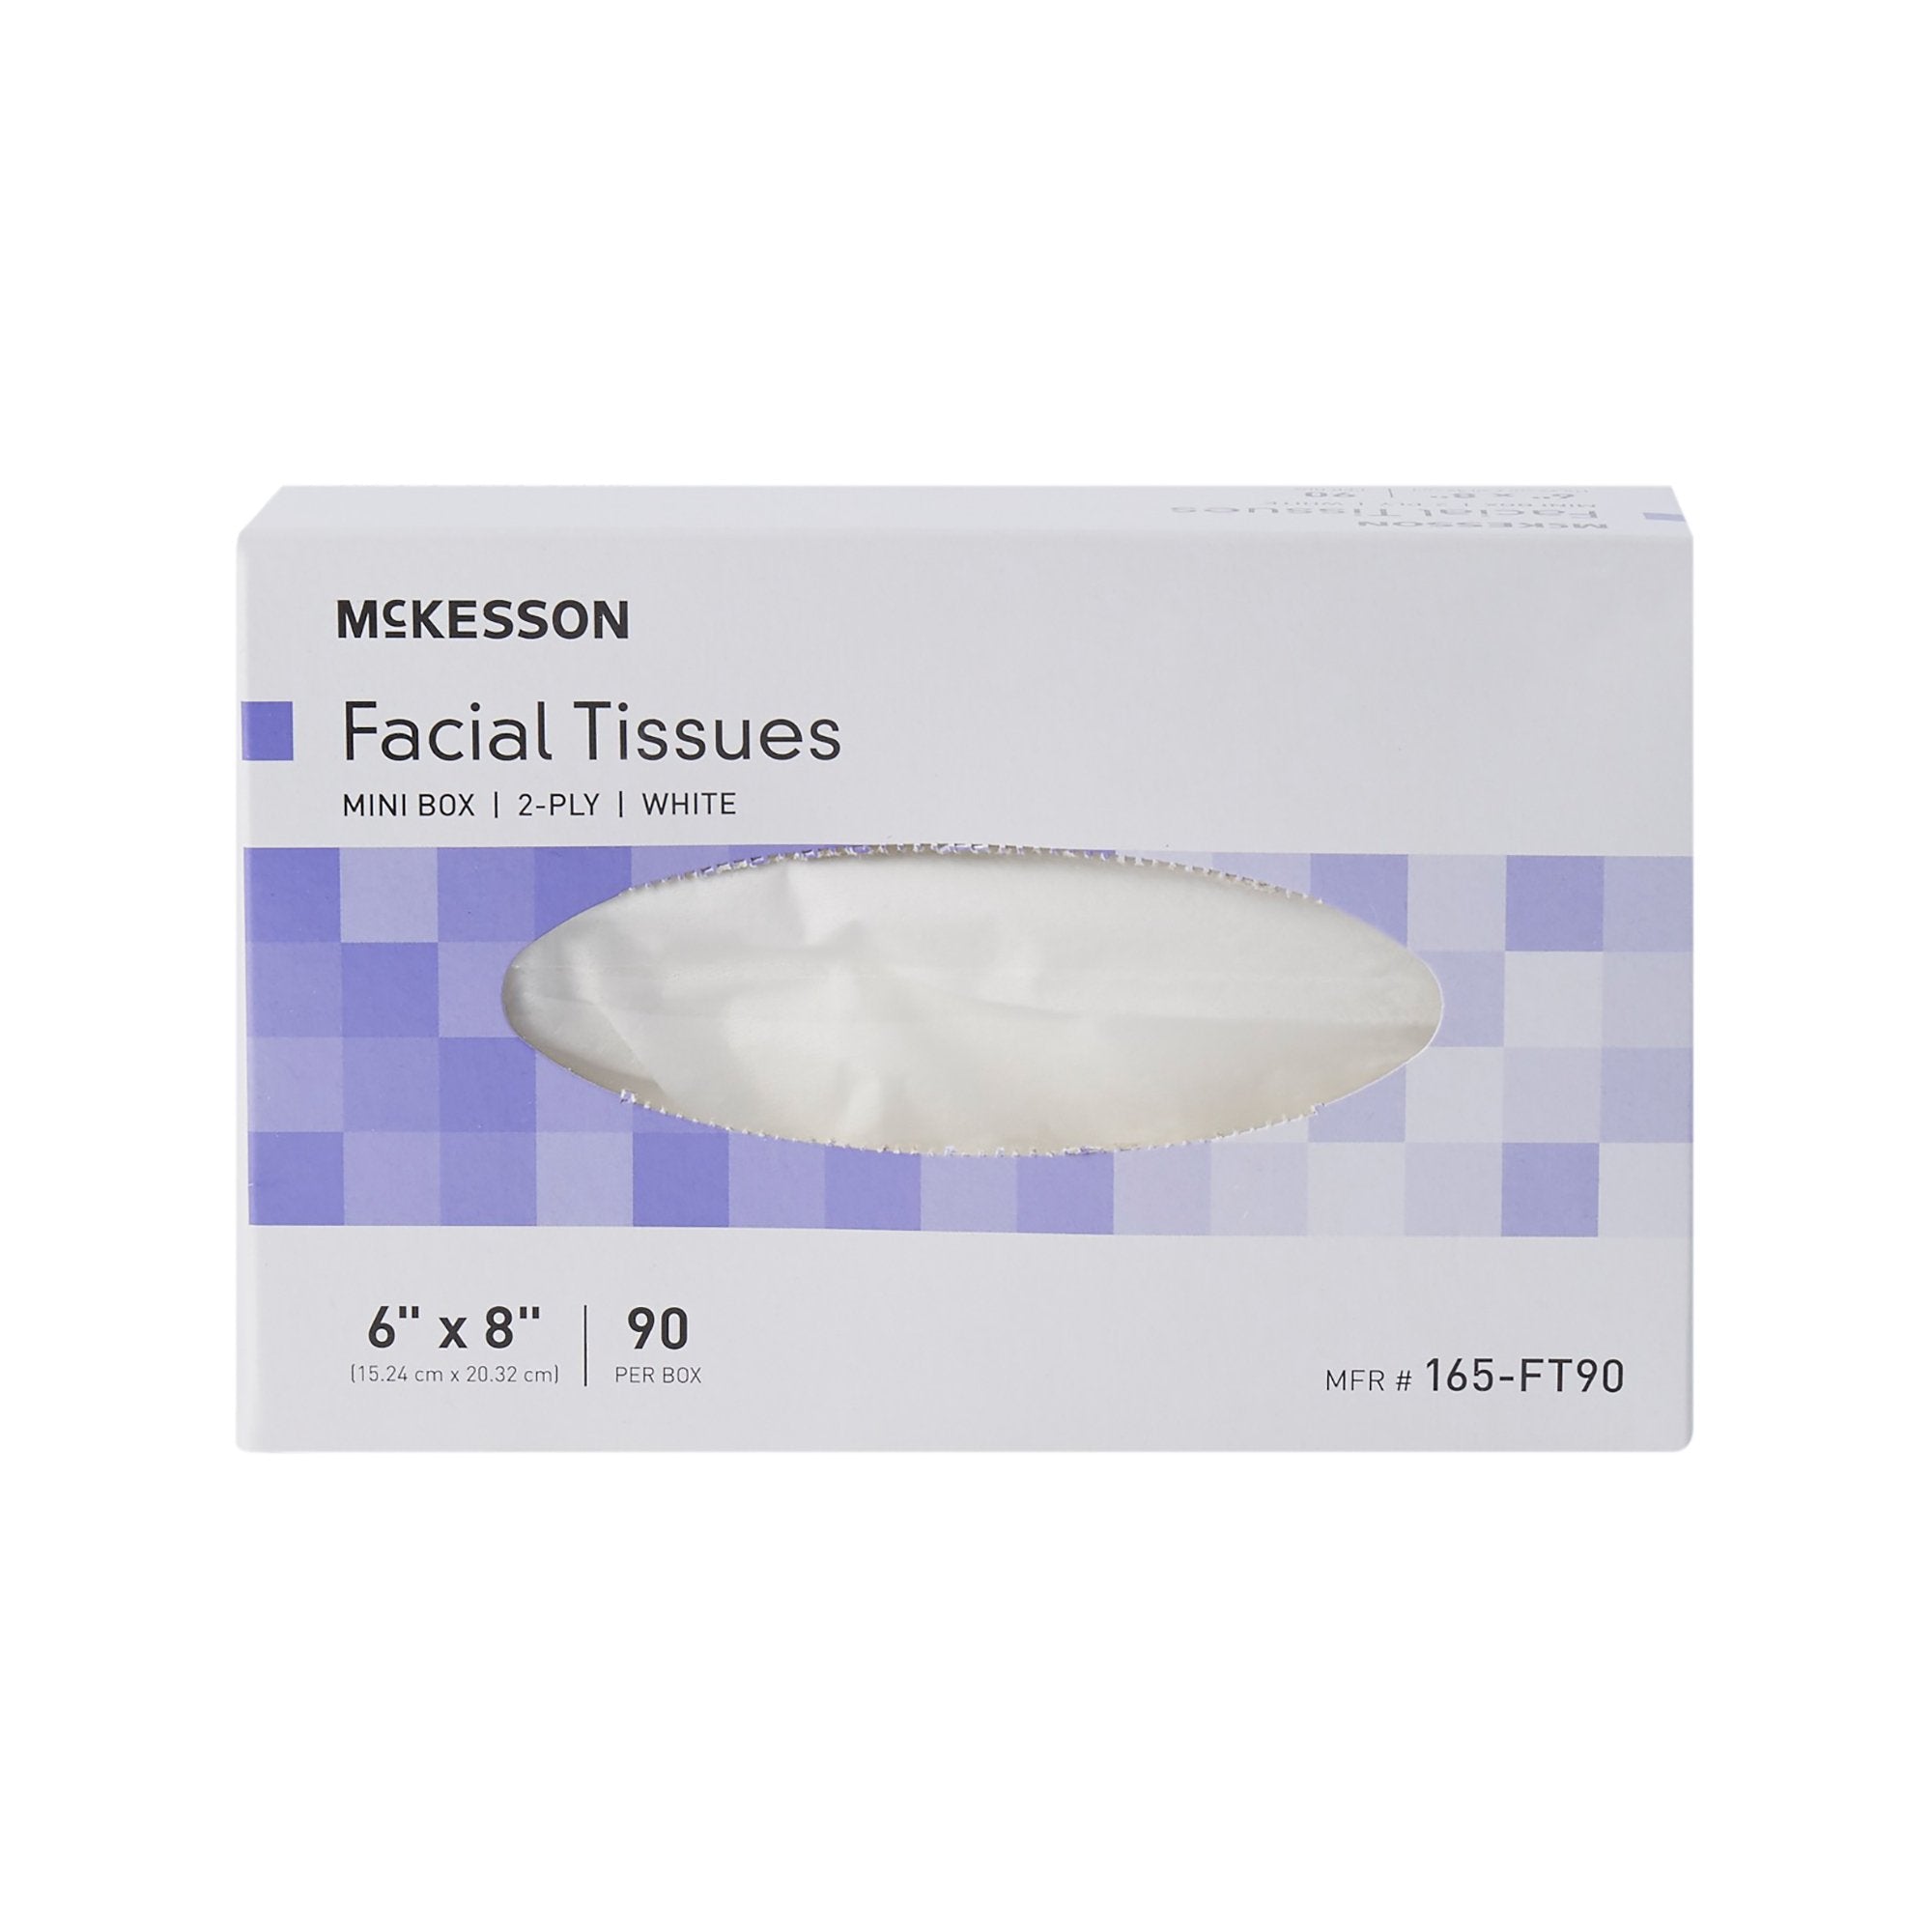 McKesson Facial Tissue White 6 X 8 Inch 90 Count